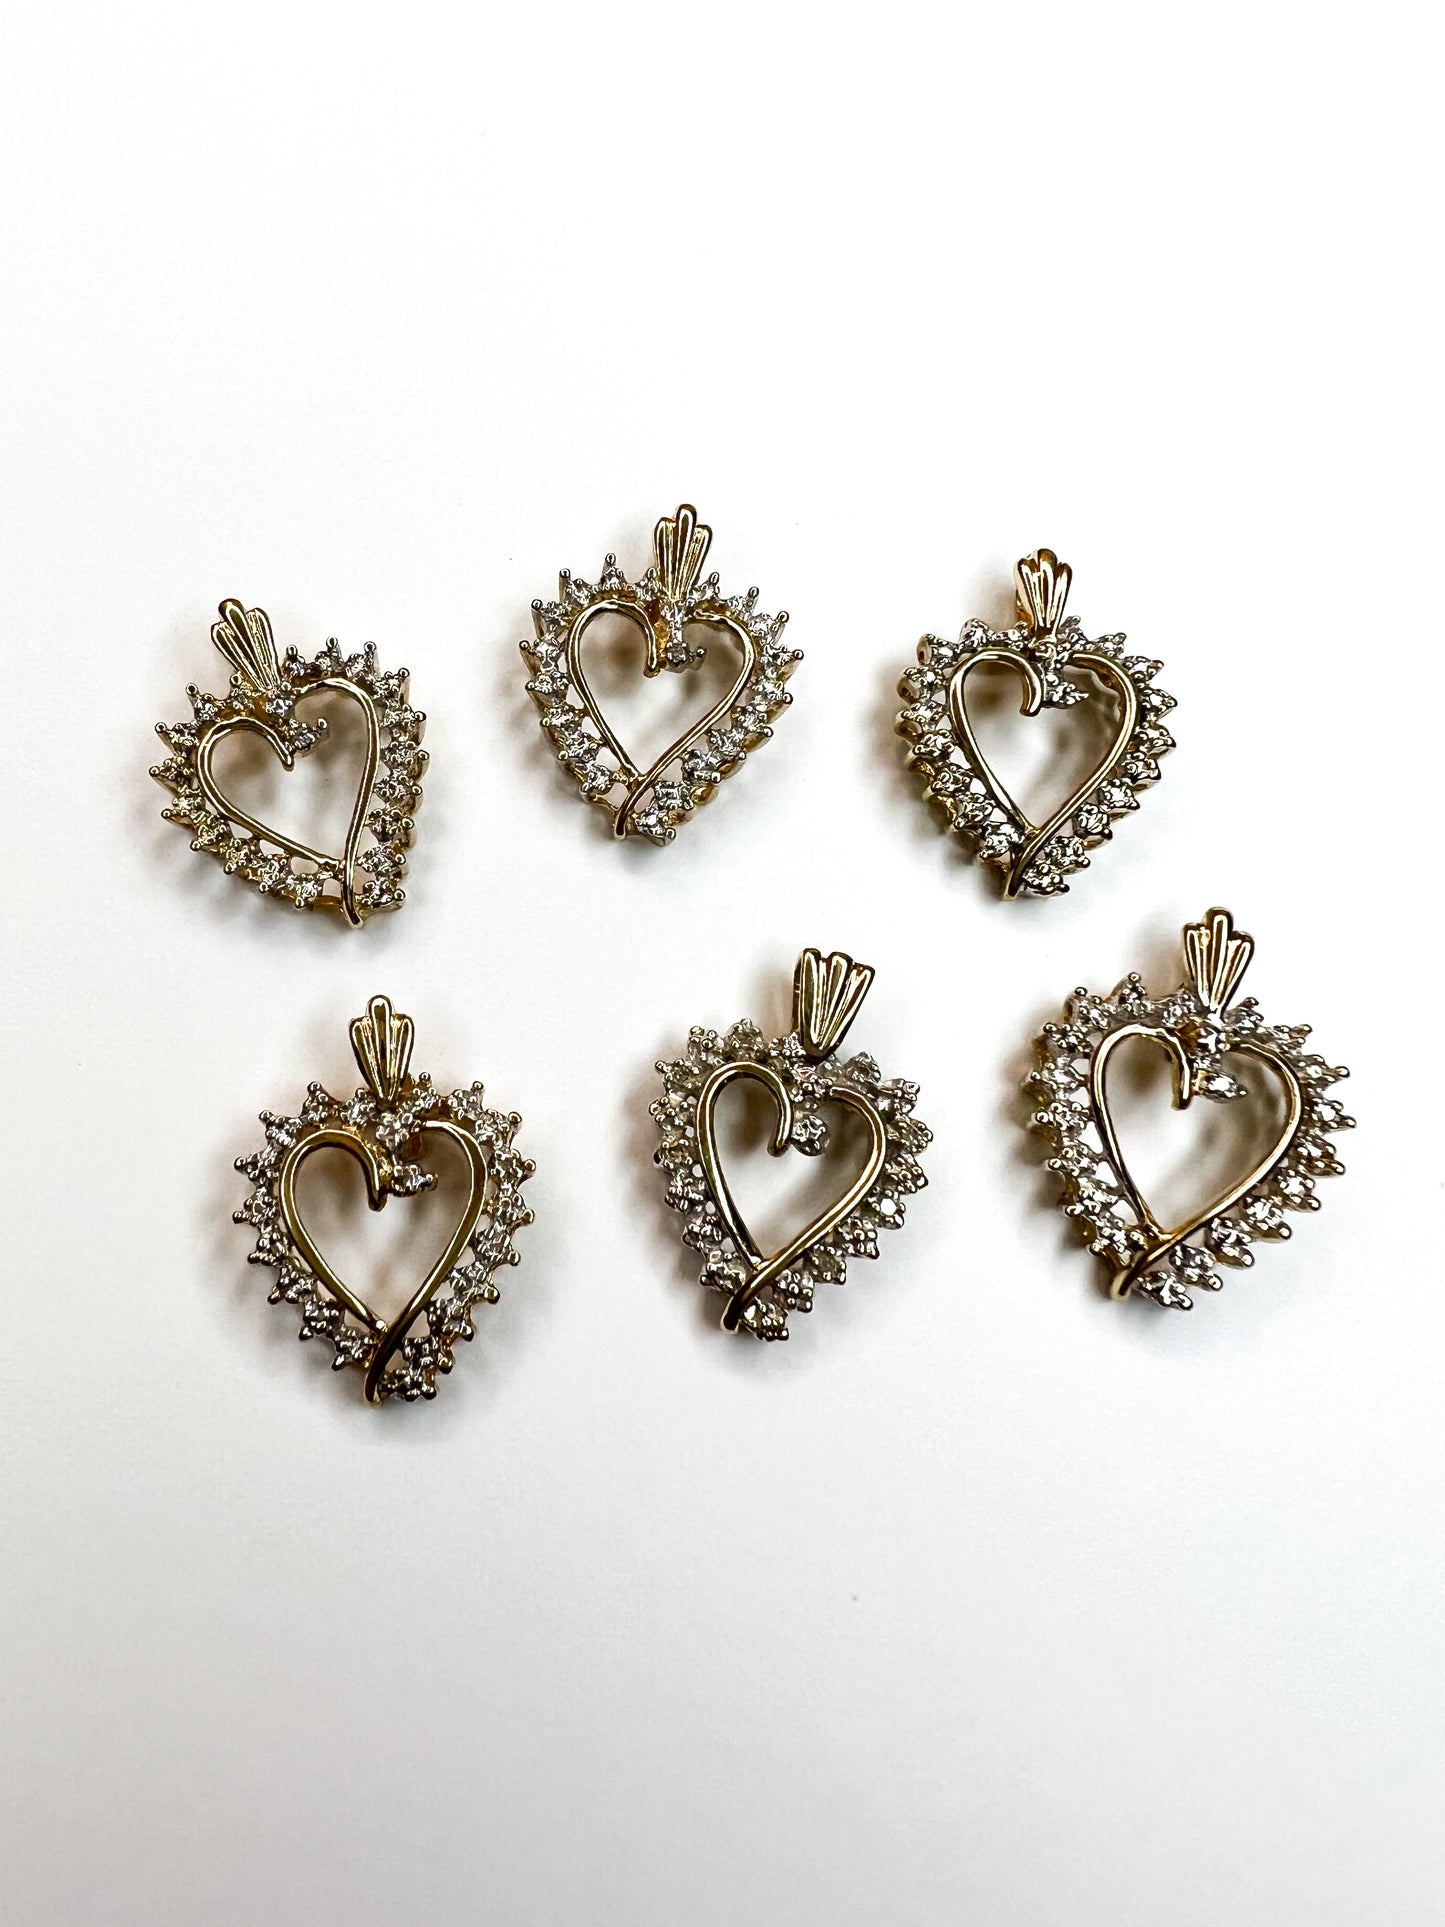 Diamond Heart Pendants